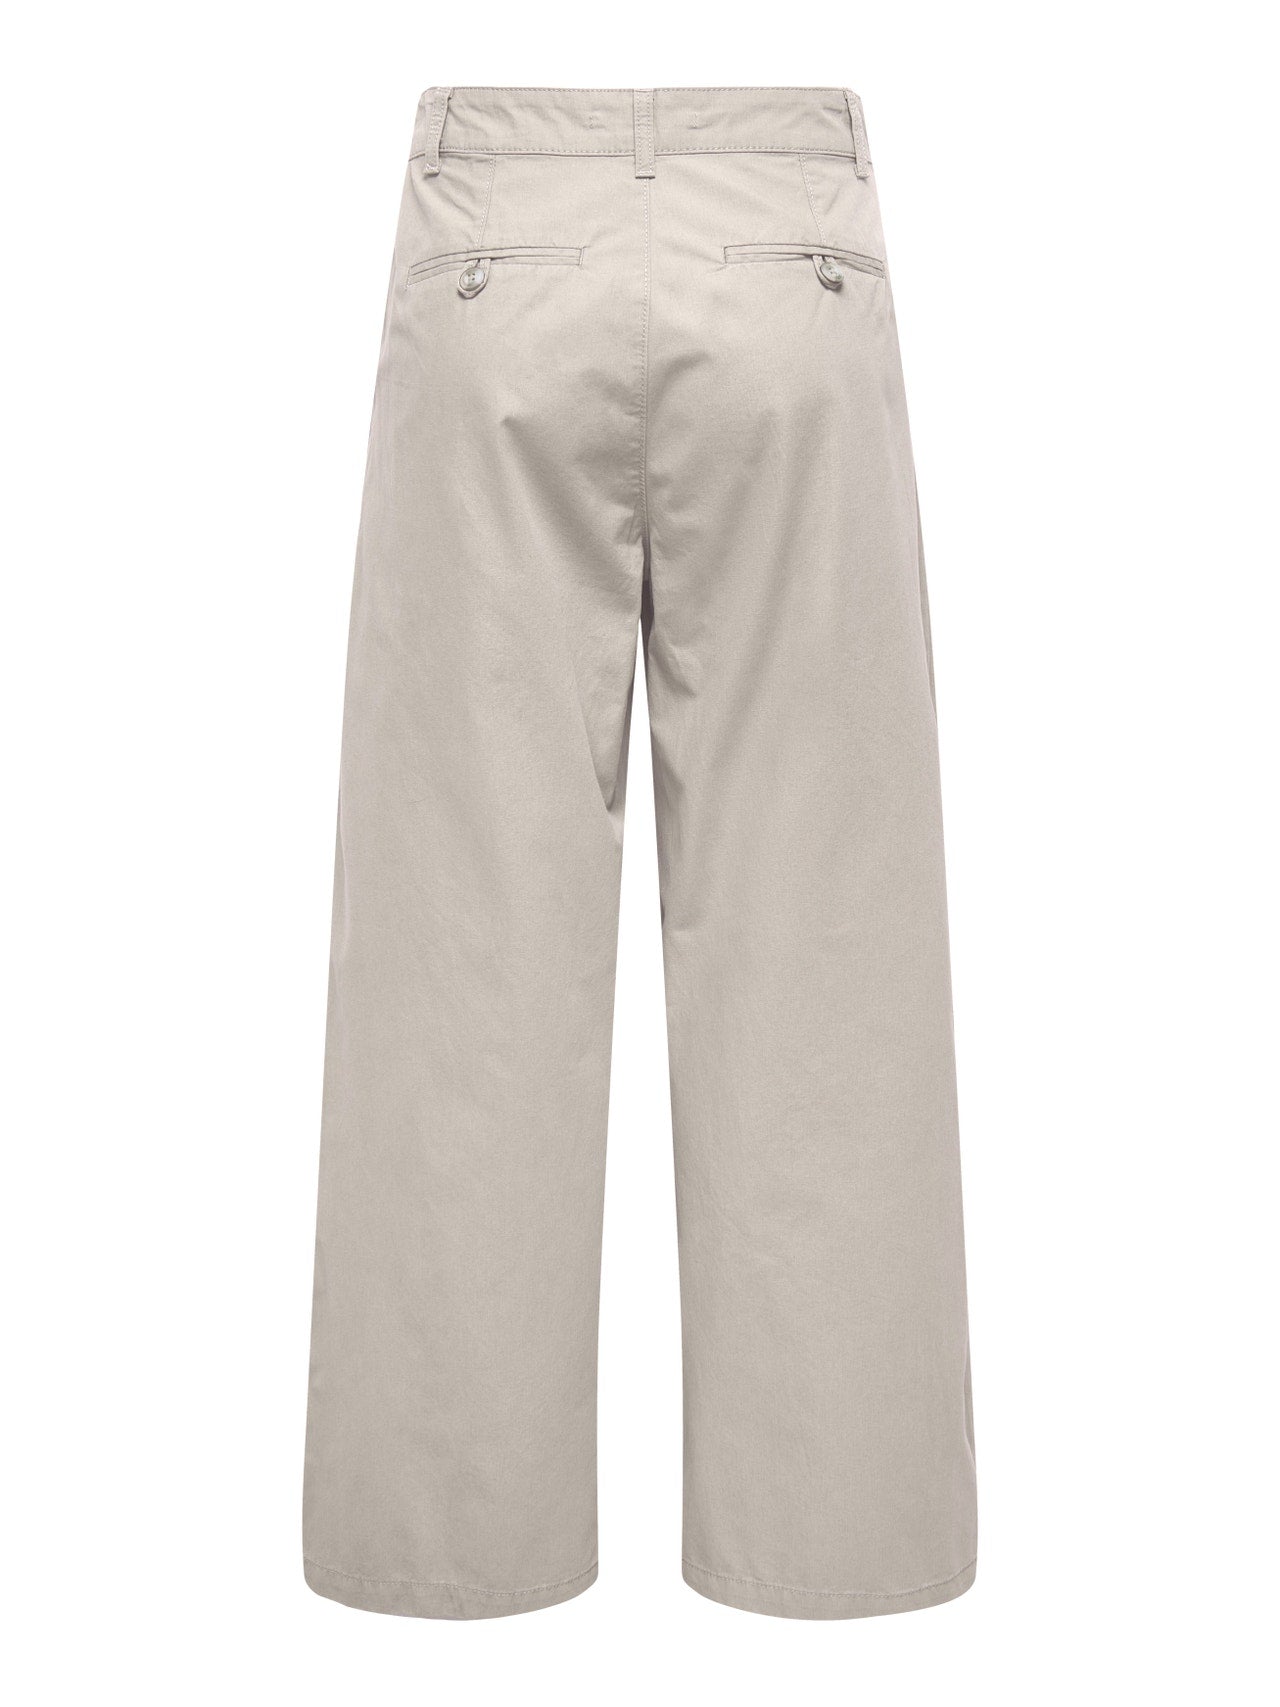 pantalon-trouser-lettie-taille-haute-only-15311375-DM2_SHOP-04